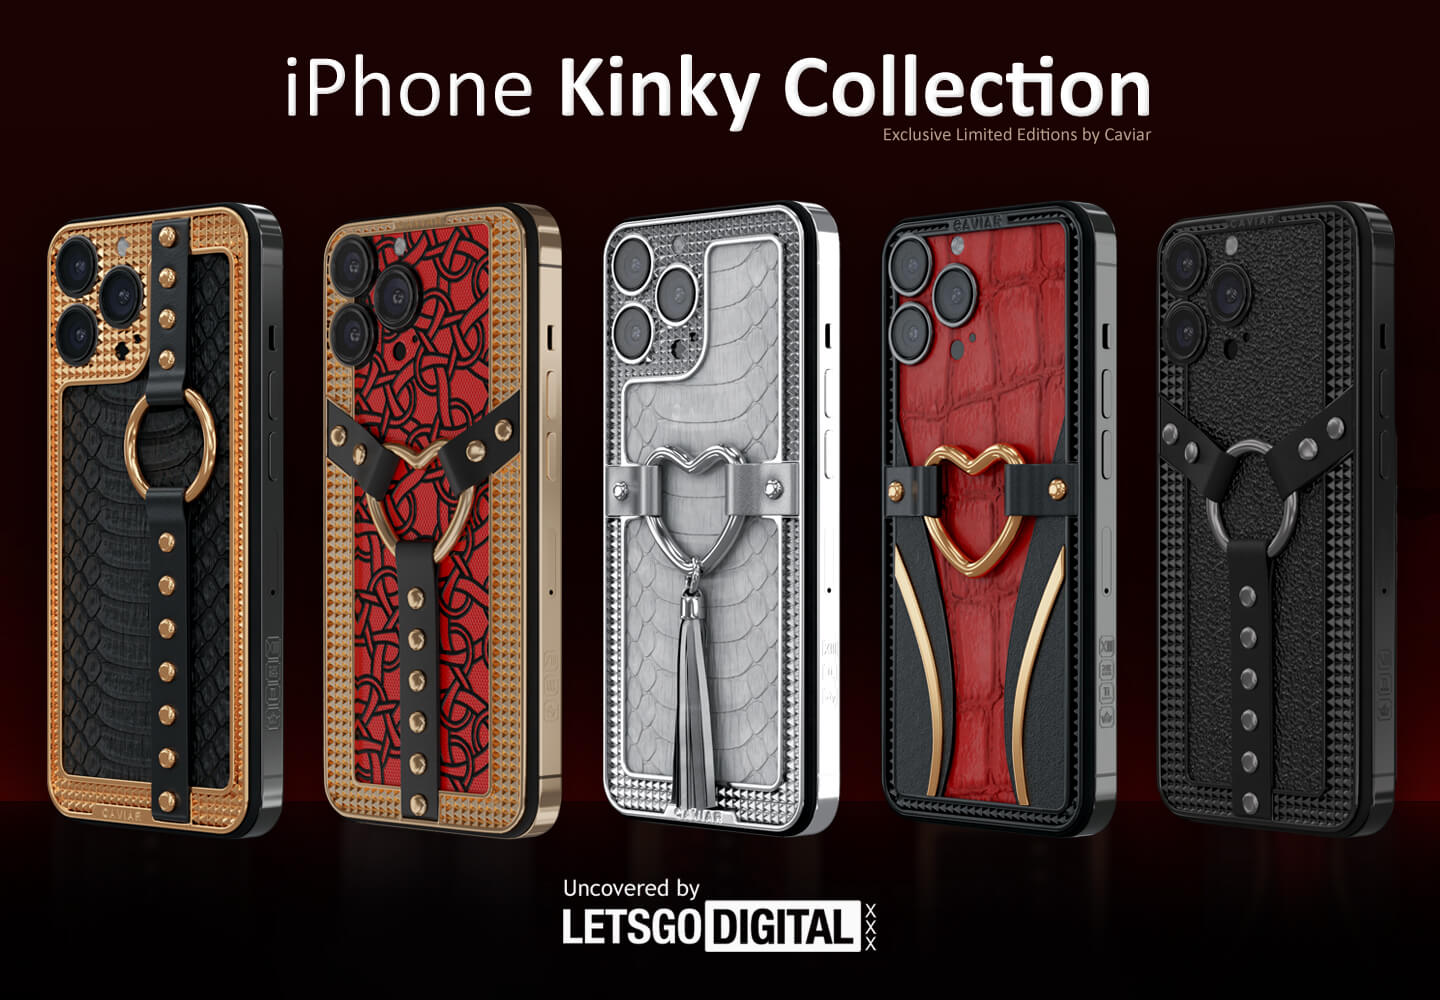 iPhone Kinky models